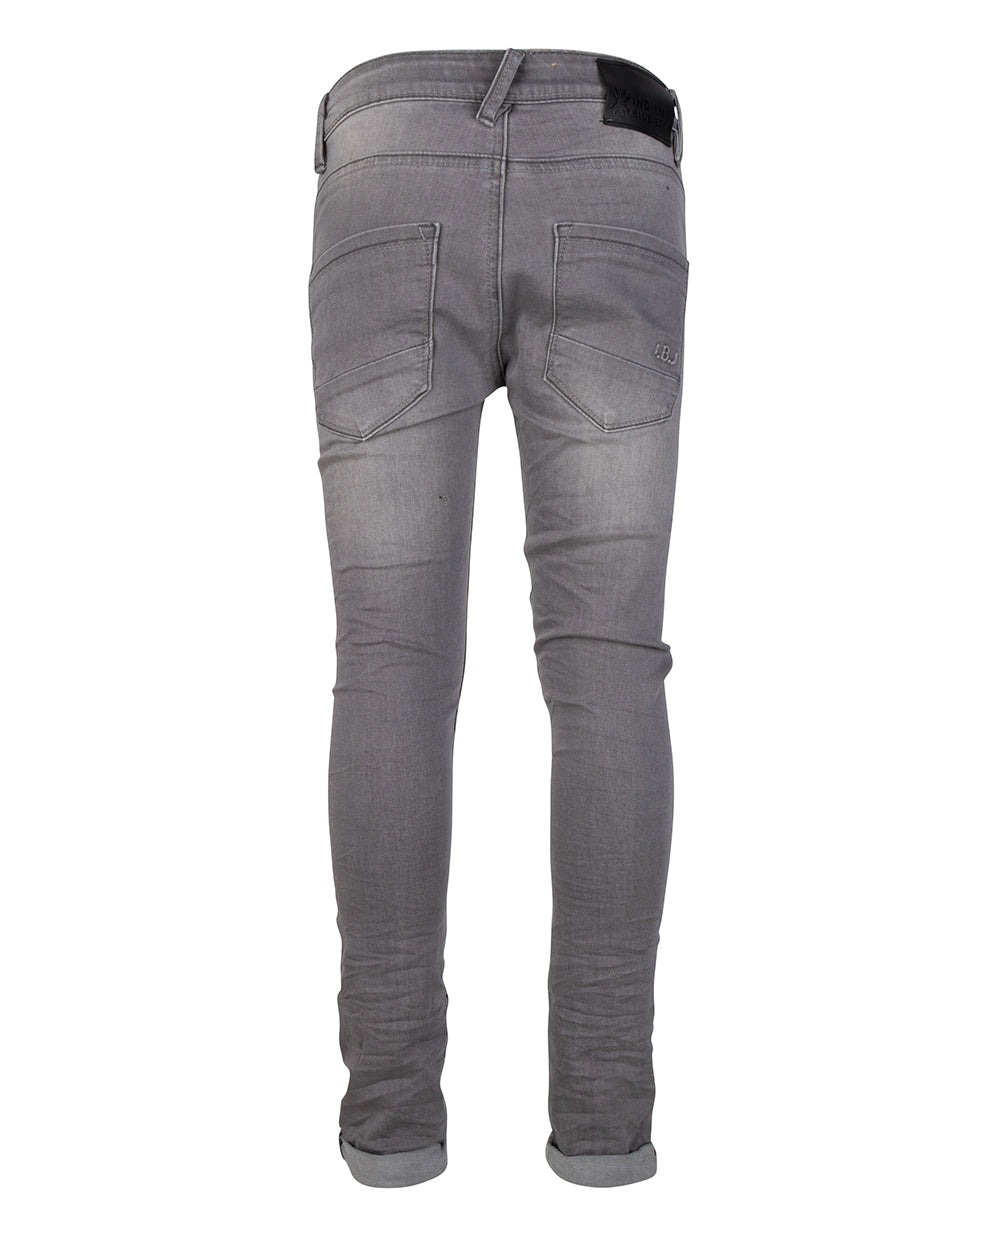 Jongens Grey Ryan Skinny Fit van Indian Blue Jeans in de kleur Light Grey Denim in maat 176.